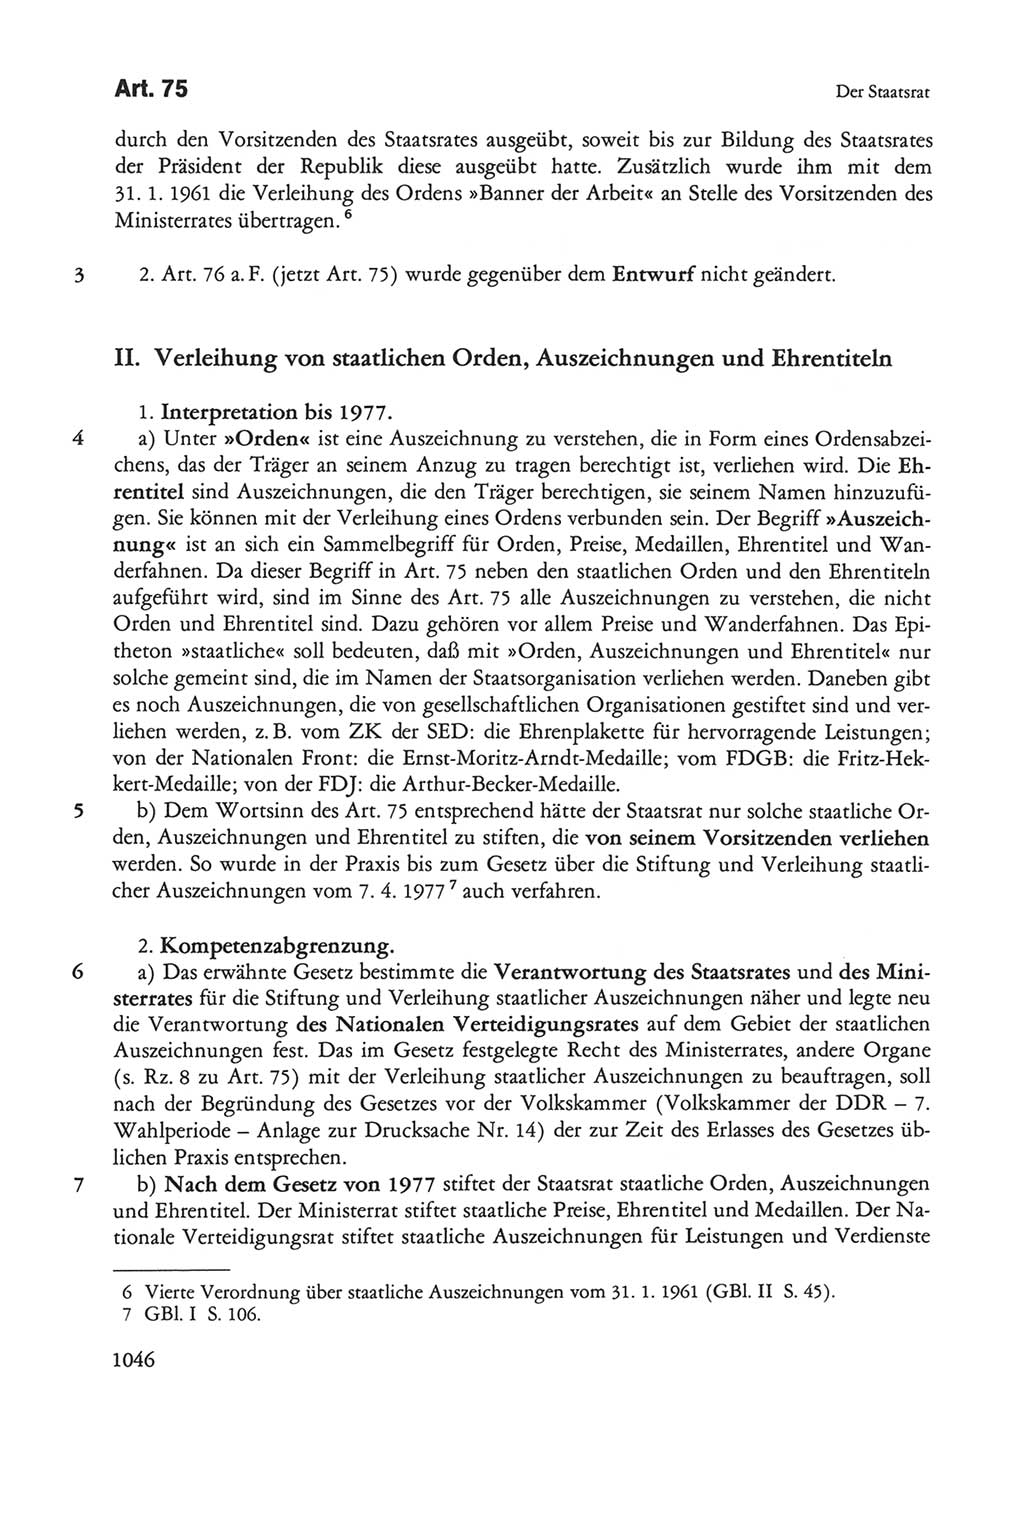 Die sozialistische Verfassung der Deutschen Demokratischen Republik (DDR), Kommentar 1982, Seite 1046 (Soz. Verf. DDR Komm. 1982, S. 1046)